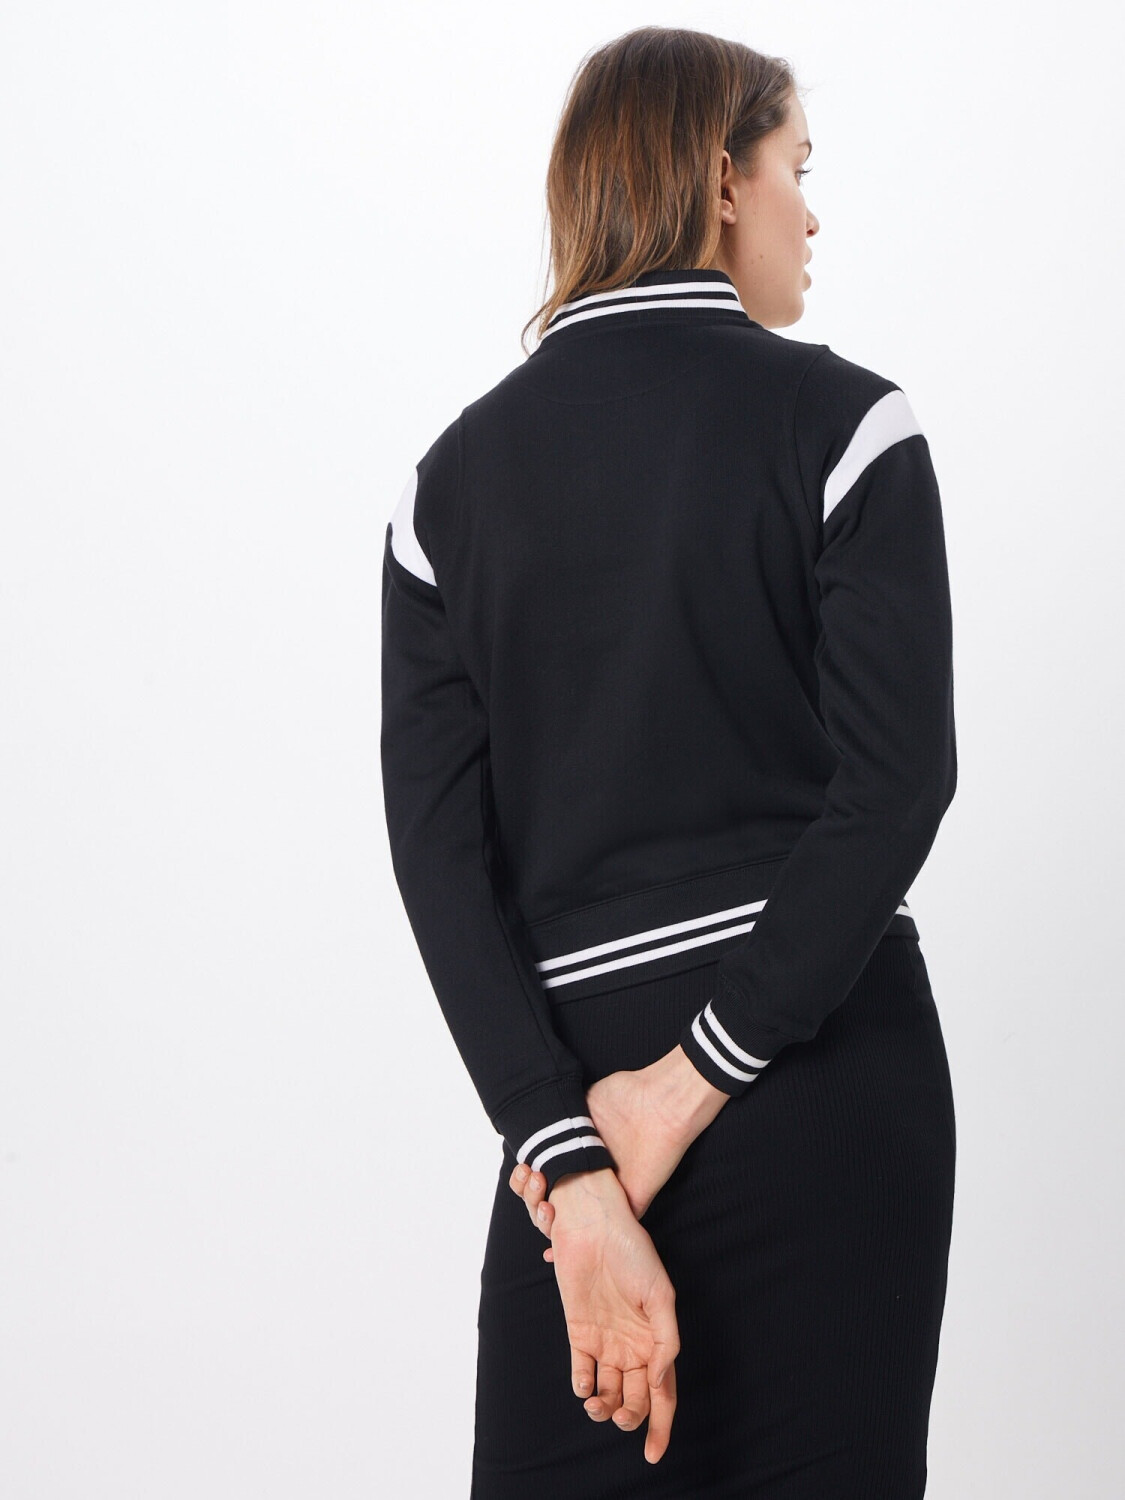 Urban Classics Inset College Jacket Women (TB2618) black/white ab € 33,81 |  Preisvergleich bei